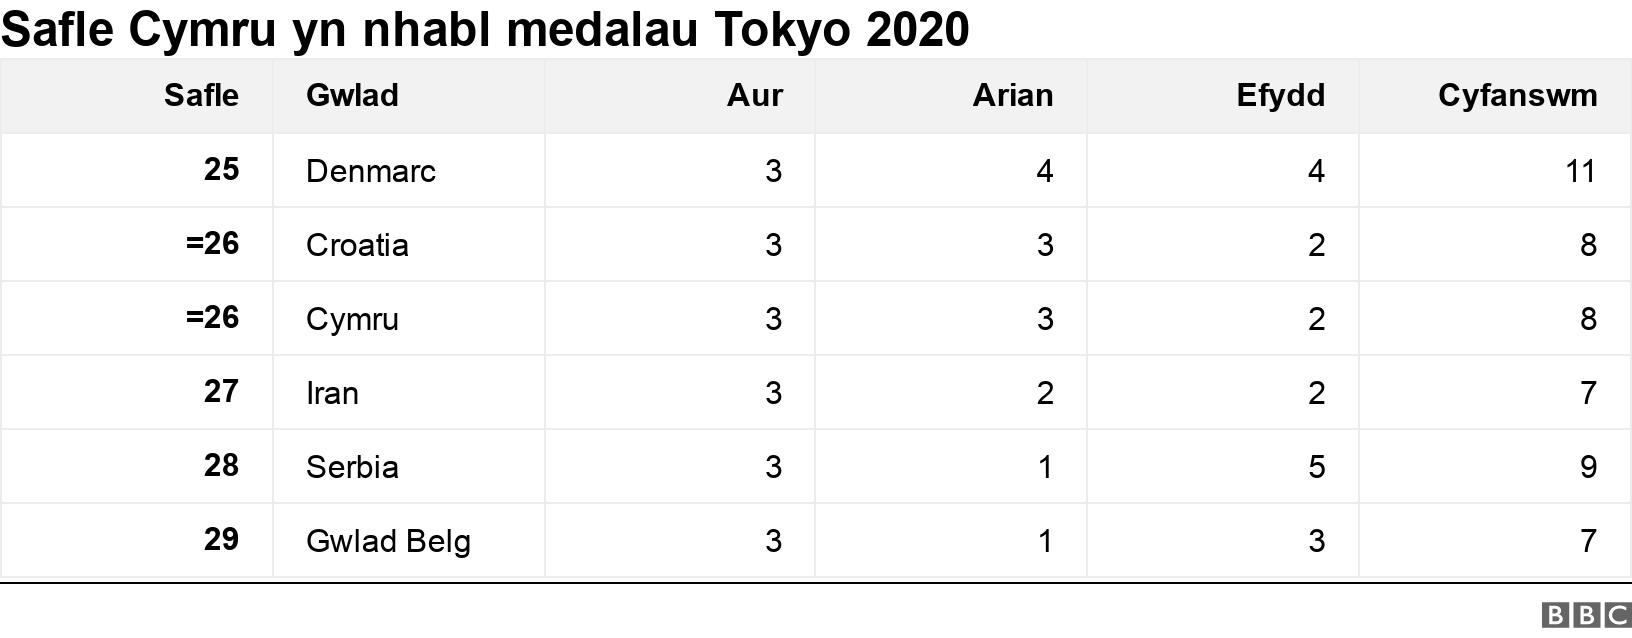 Safle Cymru yn nhabl medalau Tokyo 2020. .  .